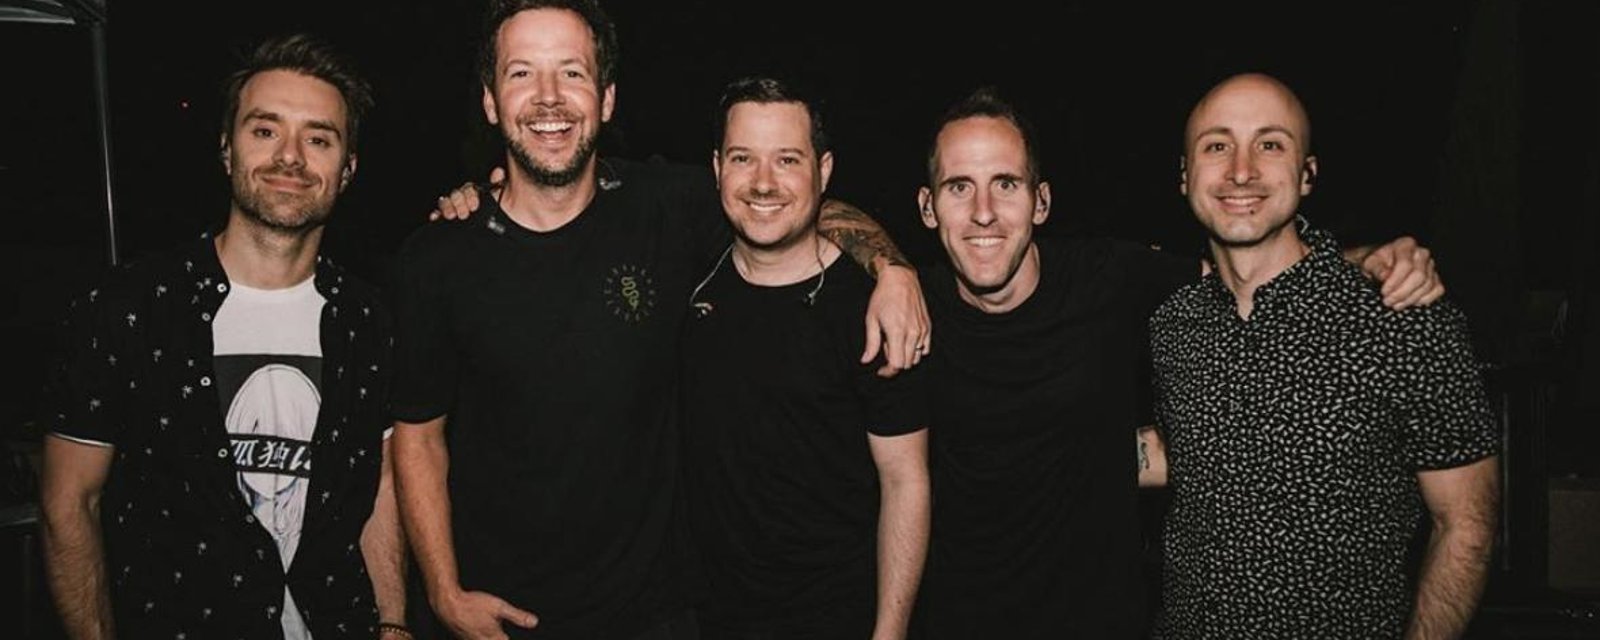 Simple Plan: le bassiste David Desrosiers quitte suite à des allégations et le groupe prend une pause